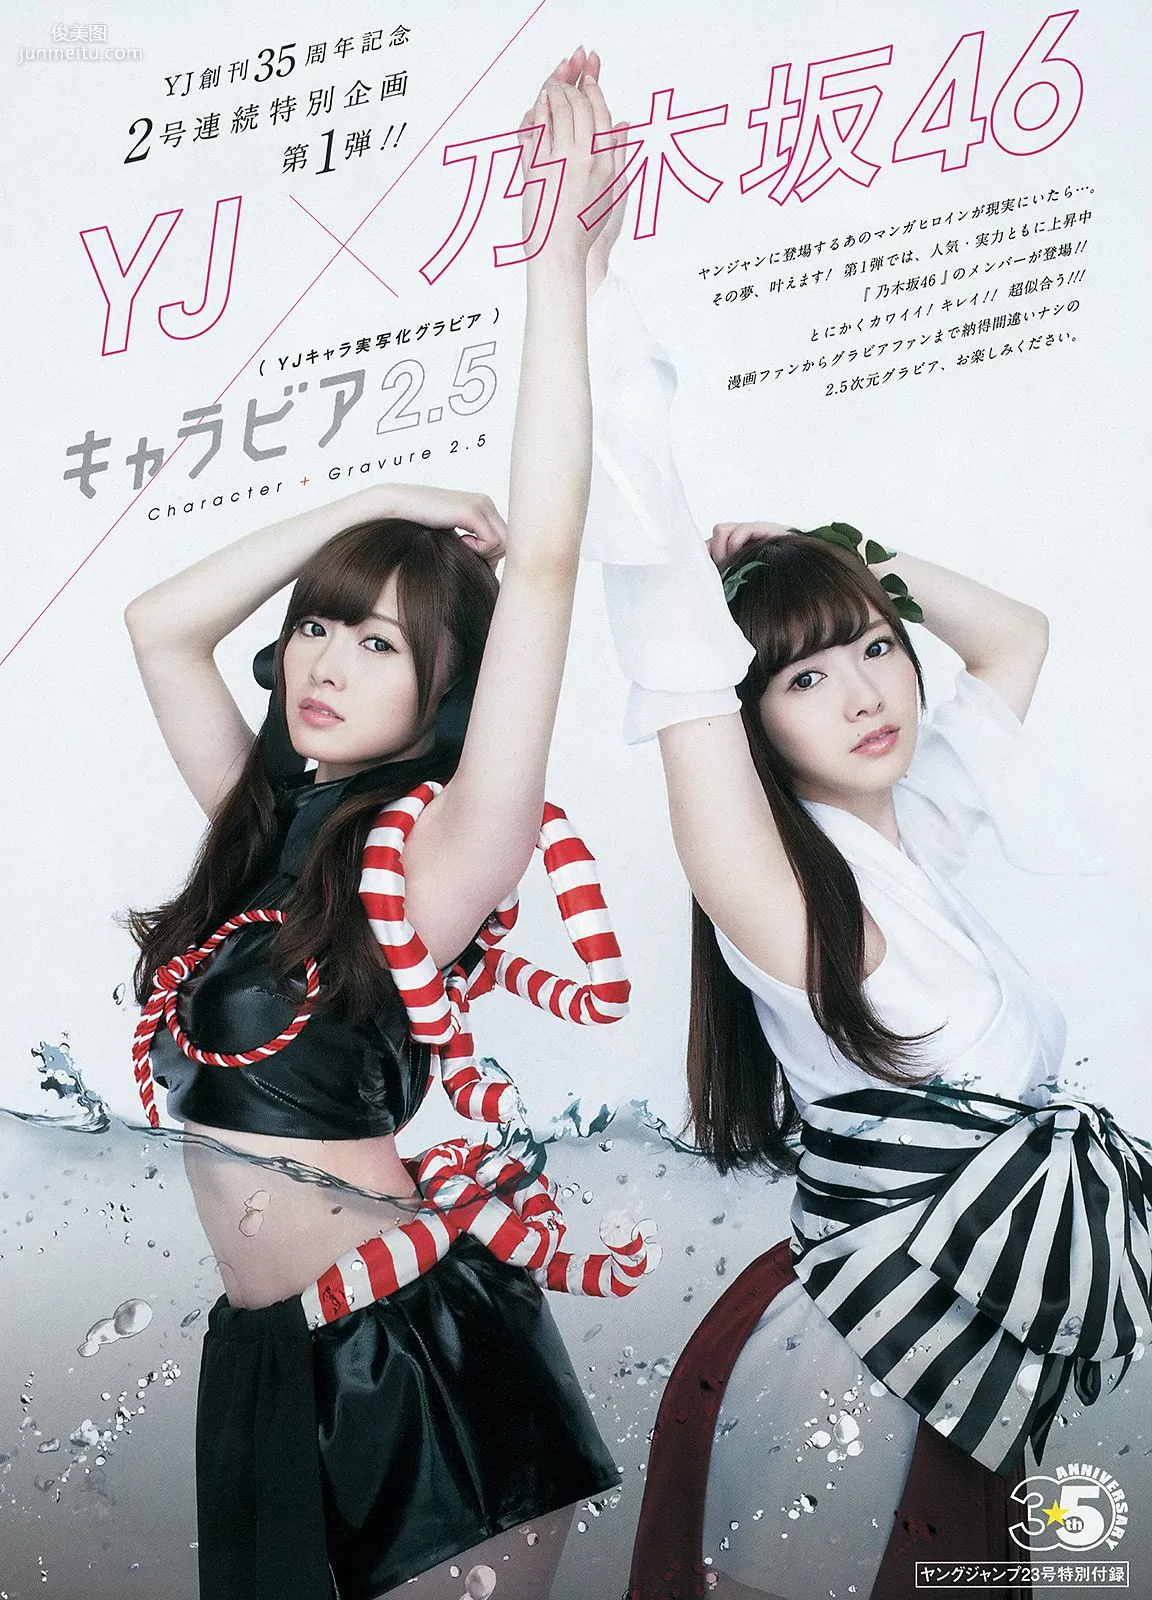 入山杏奈 高崎聖子 YJ×乃木坂46 [週刊ヤングジャンプ] 2014年No.23 写真杂志13